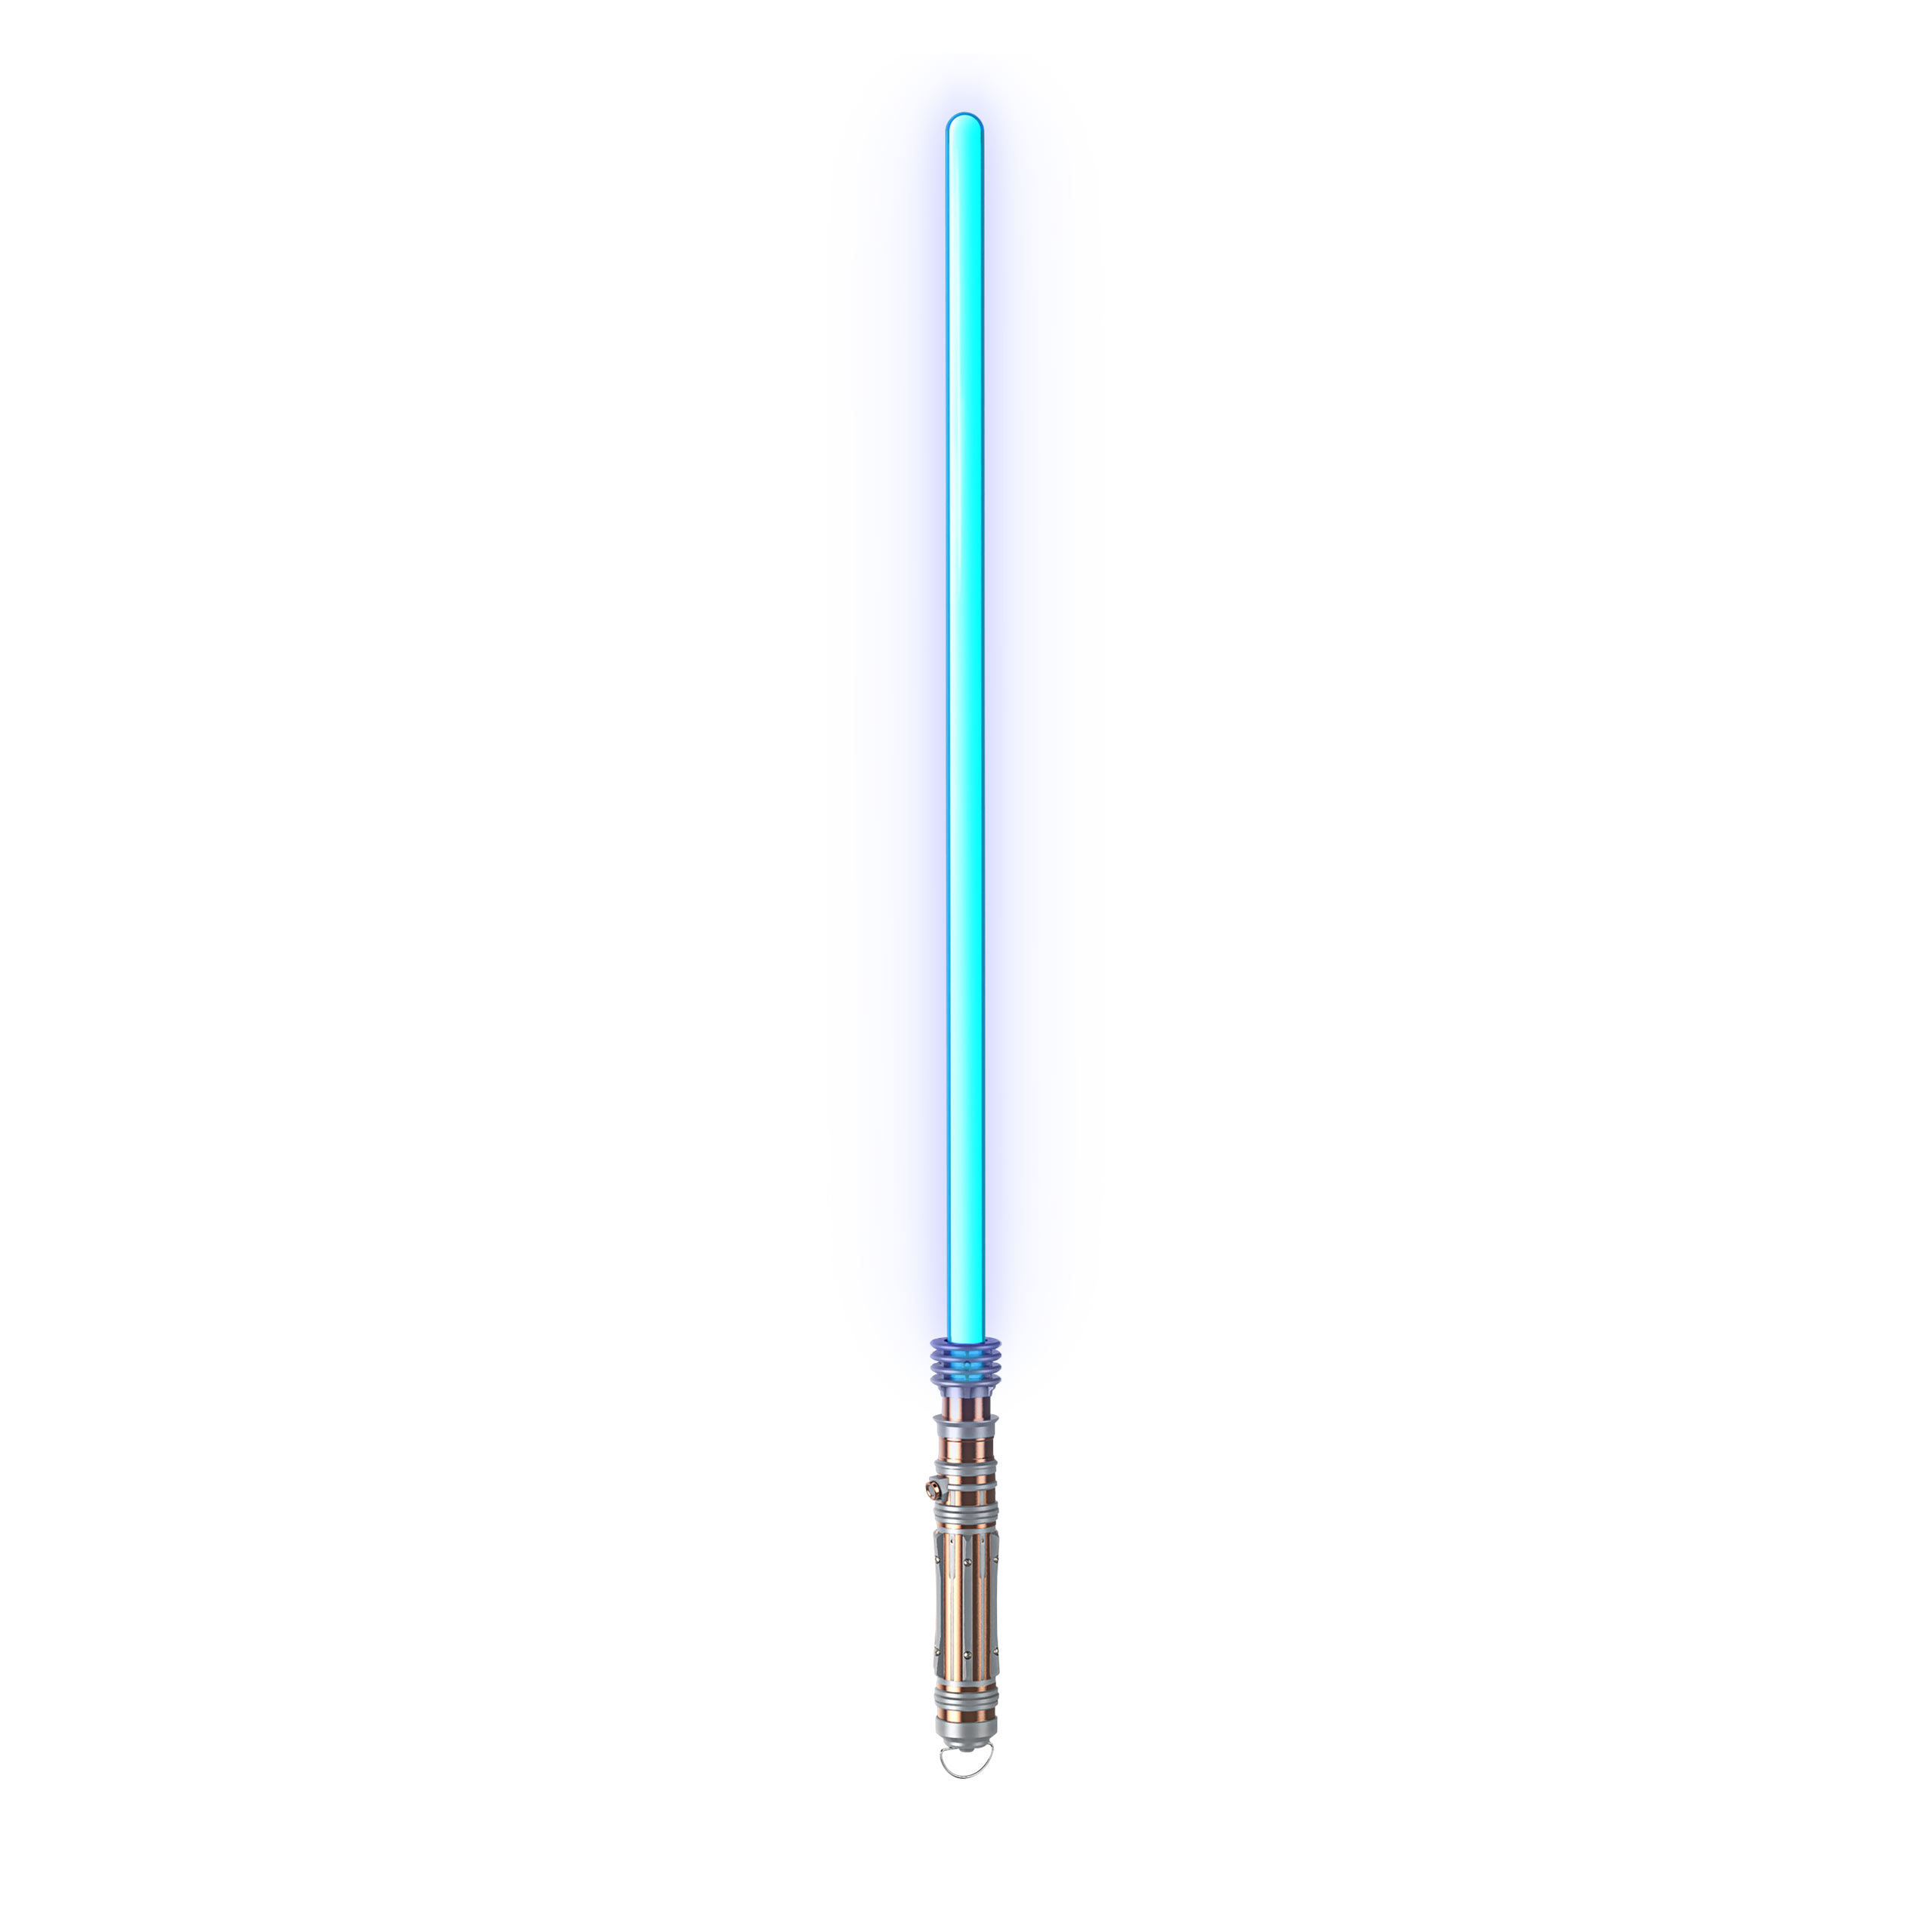 Star Wars - Leia Organa Force FX Elite Sabre Laser